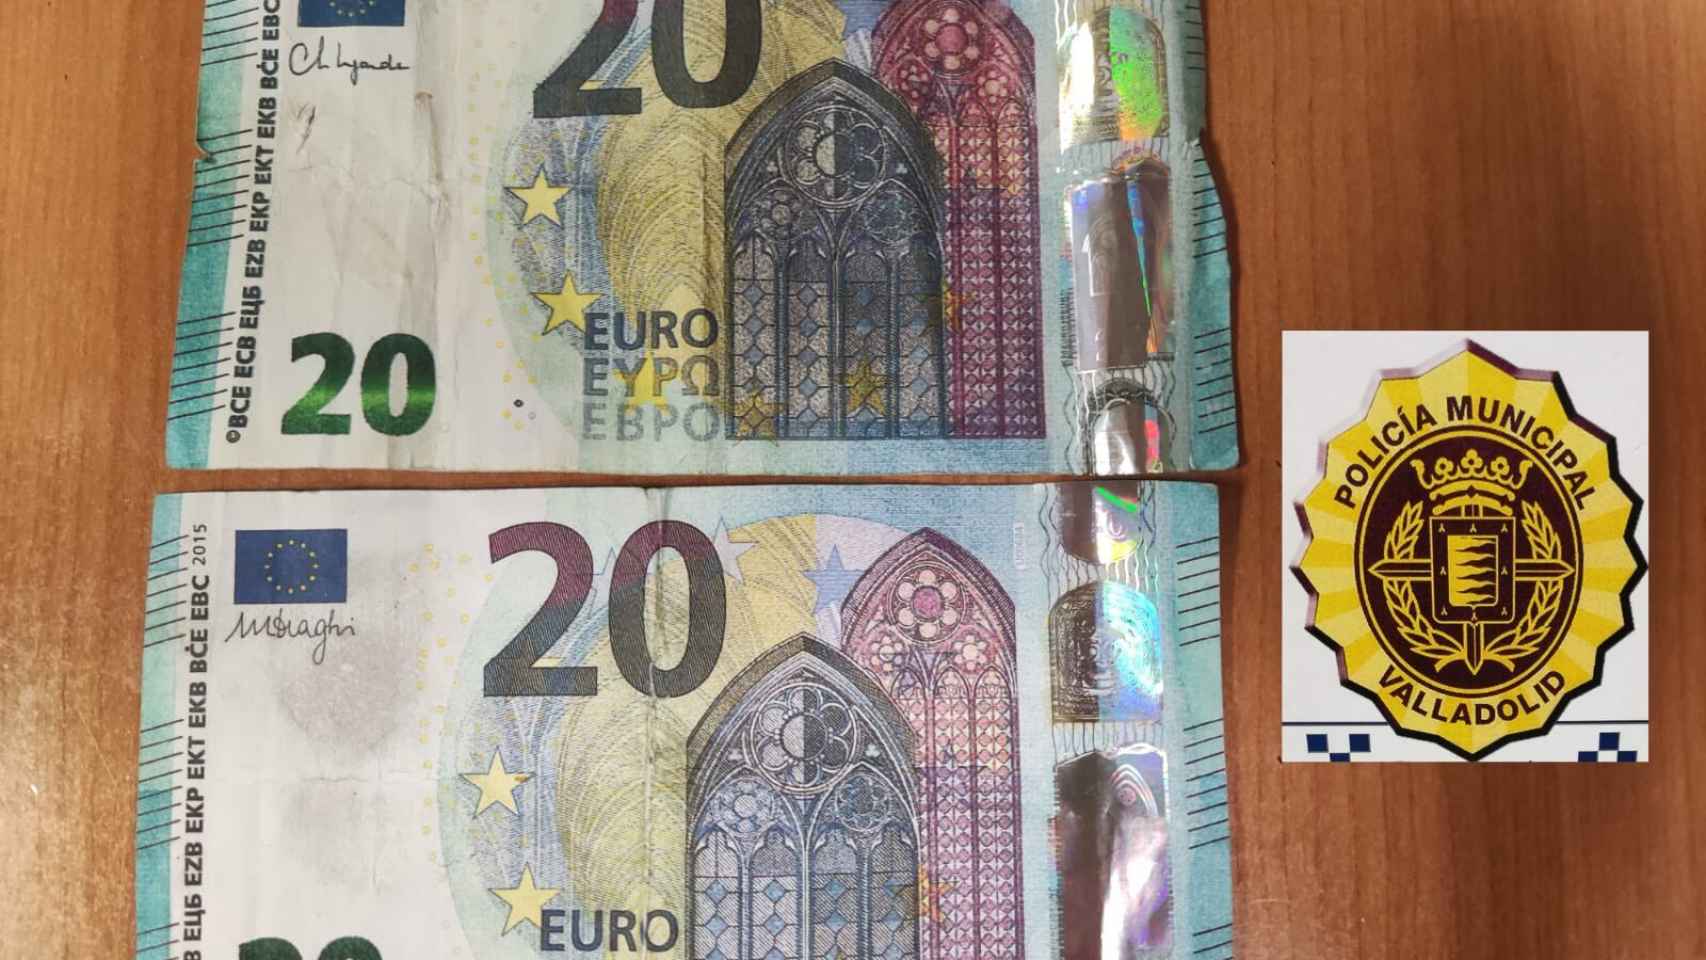 Imagen de los dos billetes falsos